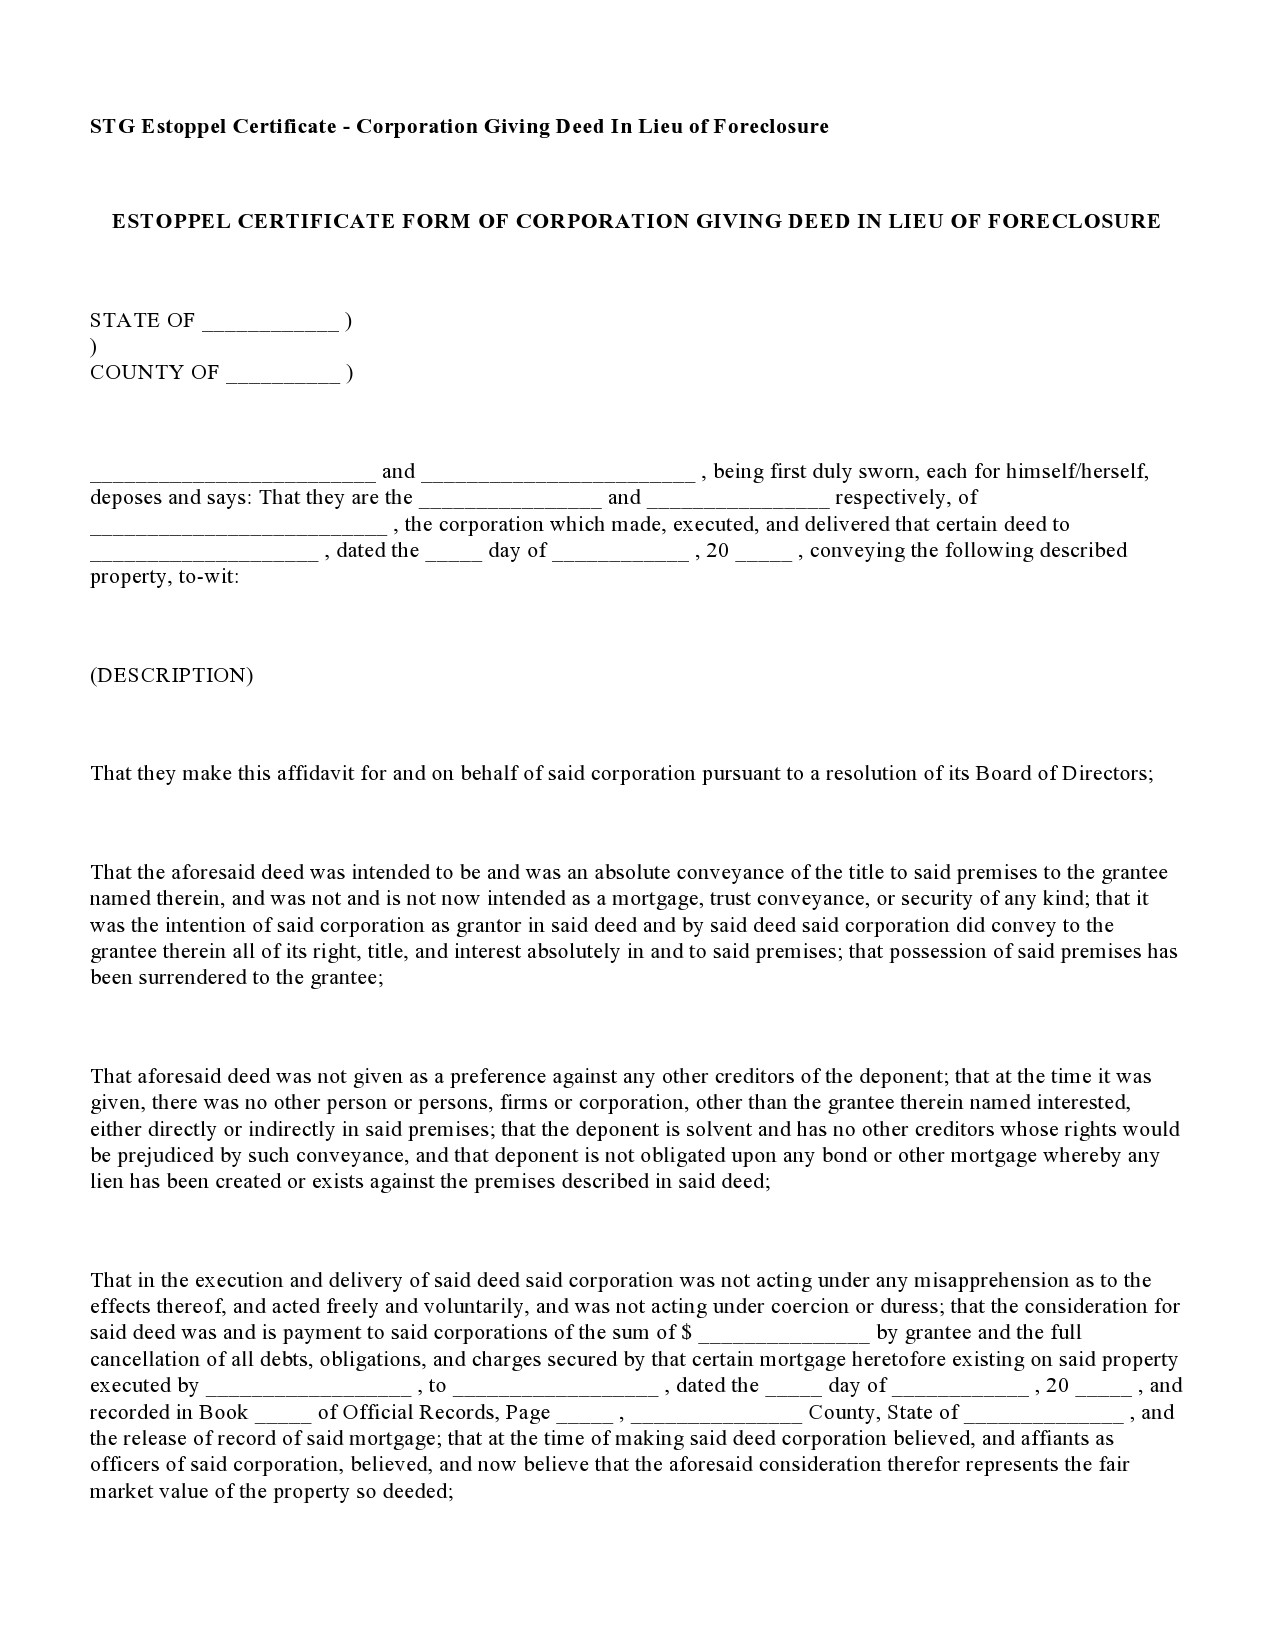 Free estoppel certificate form 19